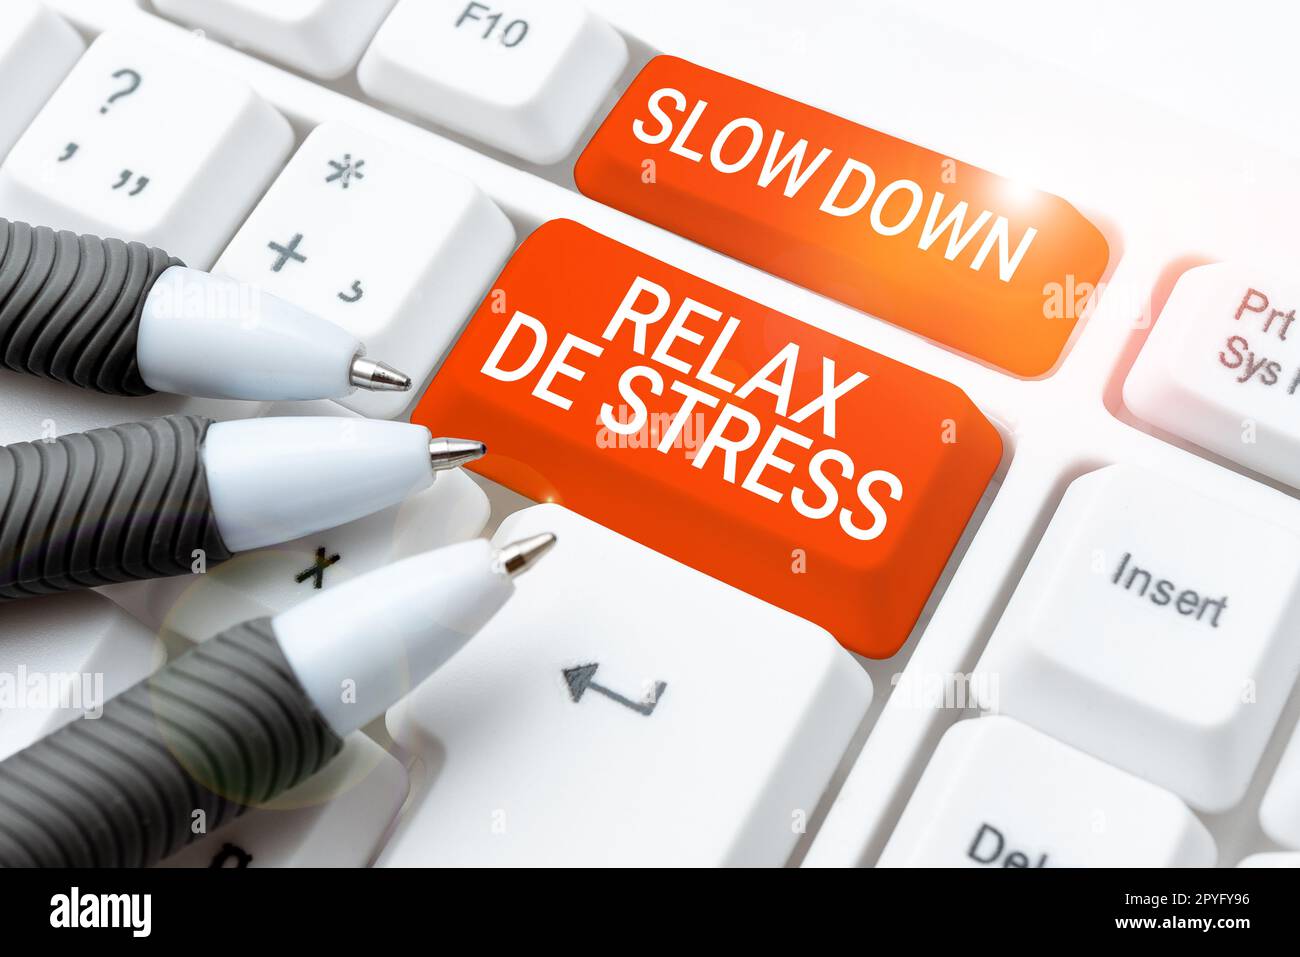 Inspiration mit Schild „Slow Down Relax De Stress“. Geschäftsübersicht Pause Stress reduzieren Ruhe bewahren Stockfoto